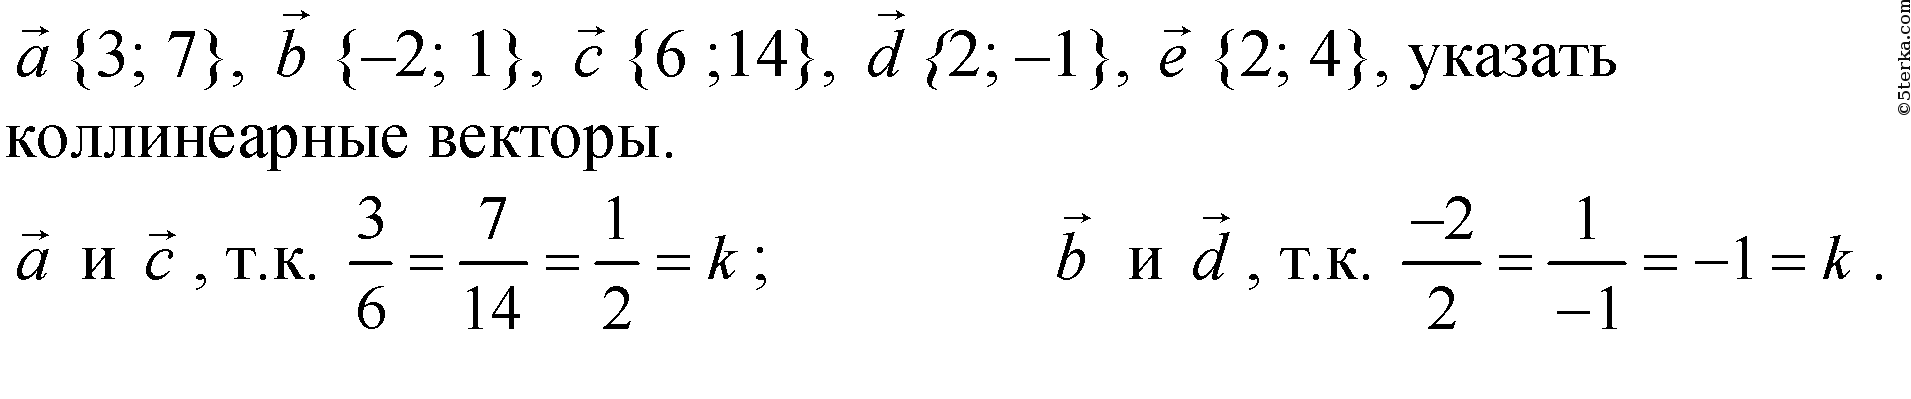 Даны векторы а 3 6 8. Укажите пару коллинеарных векторов. 1+1=2 Вектор. 1 2 3 Вектор. Вектор 1 4 3.